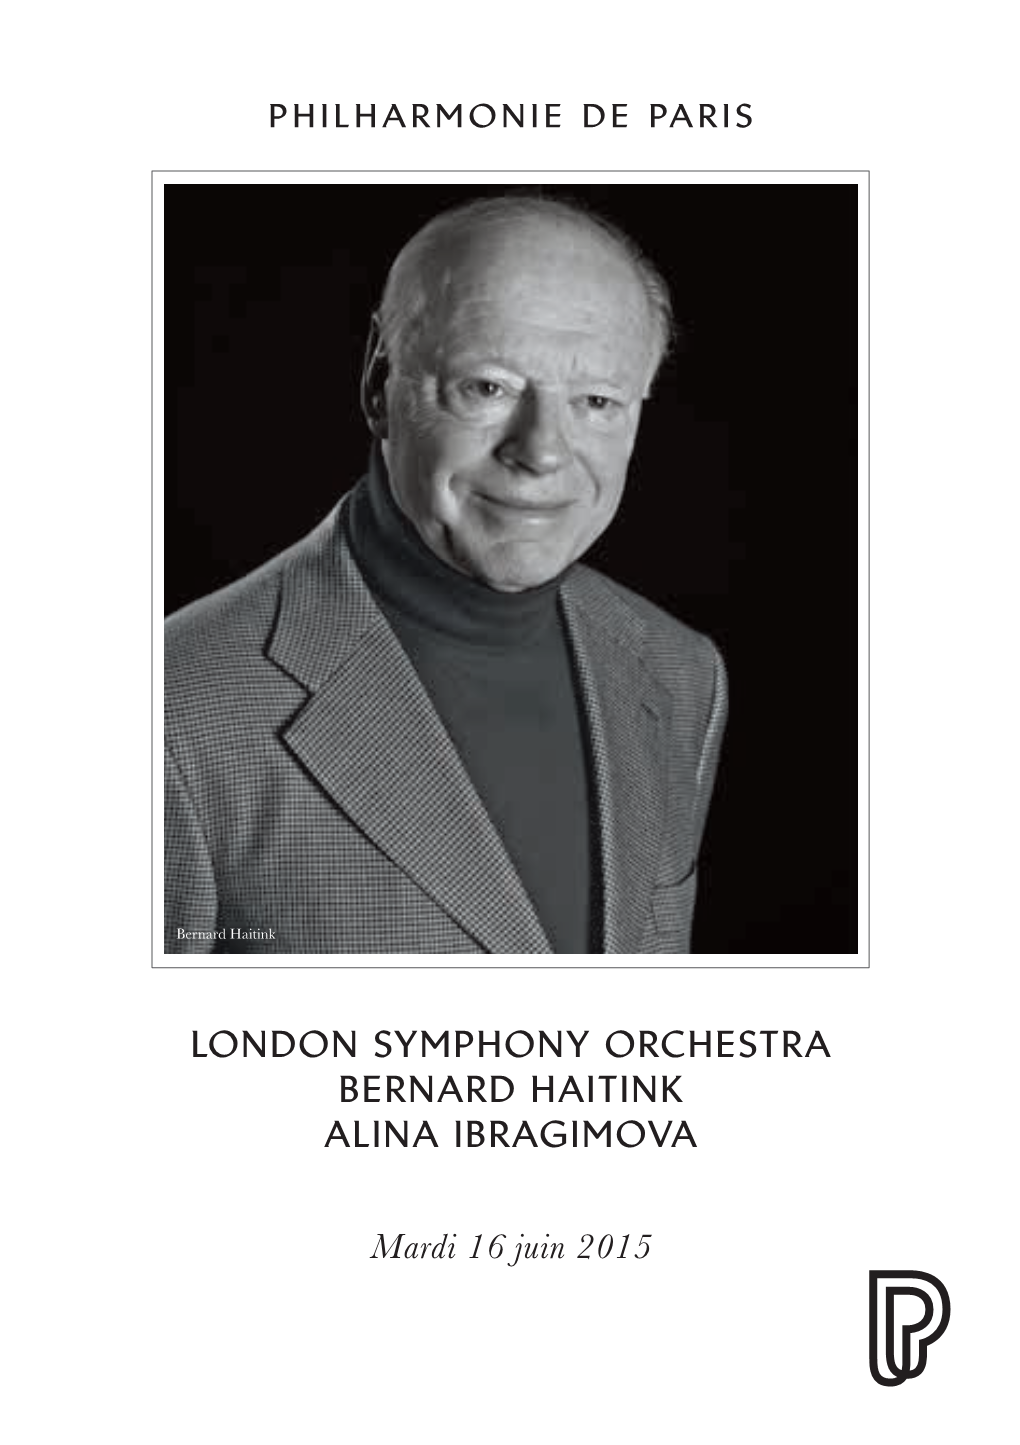 London Symphony Orchestra Bernard Haitink Alina Ibragimova